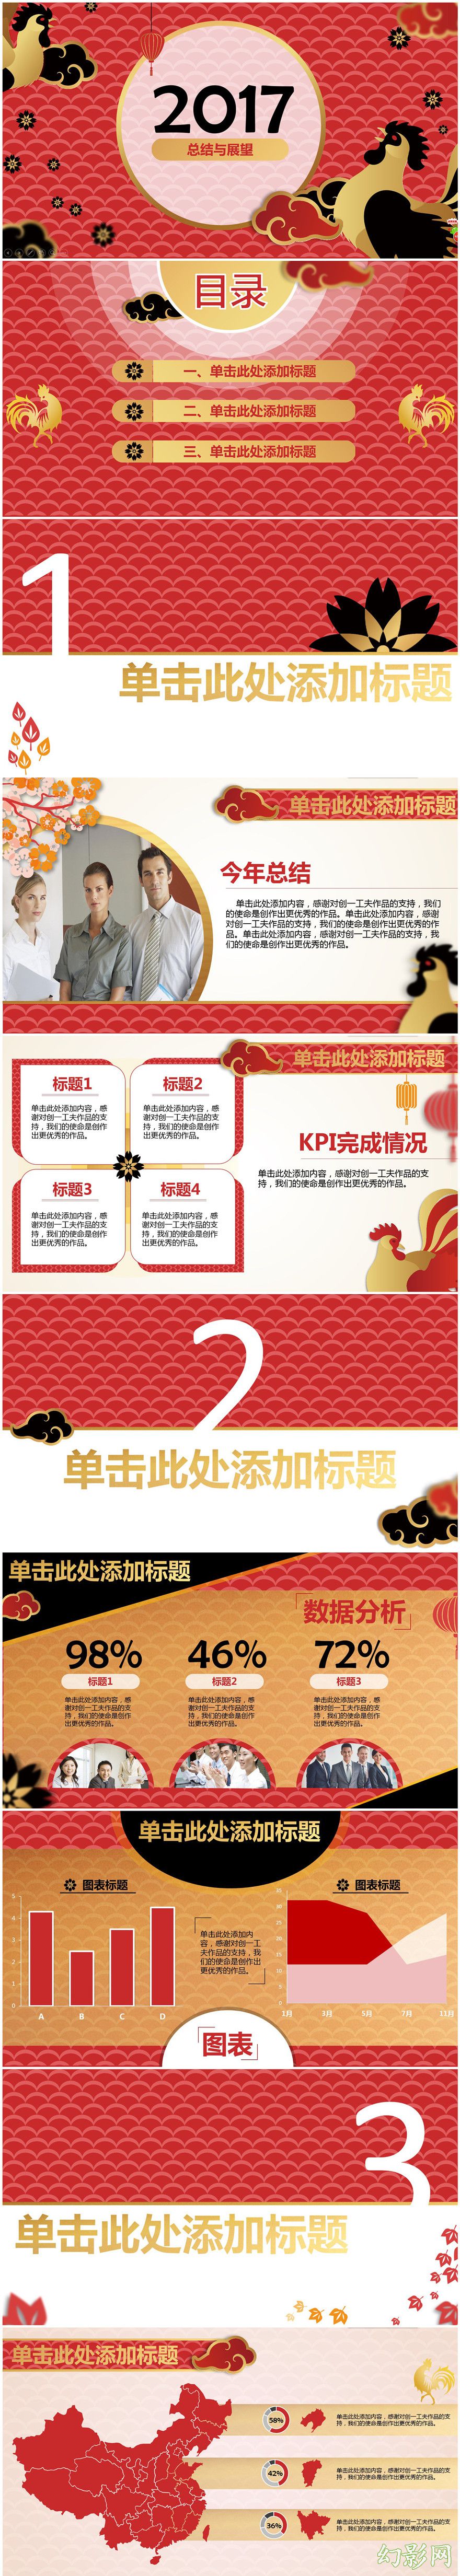 2017年鸡年主题中国风大气微立体动态商务模板